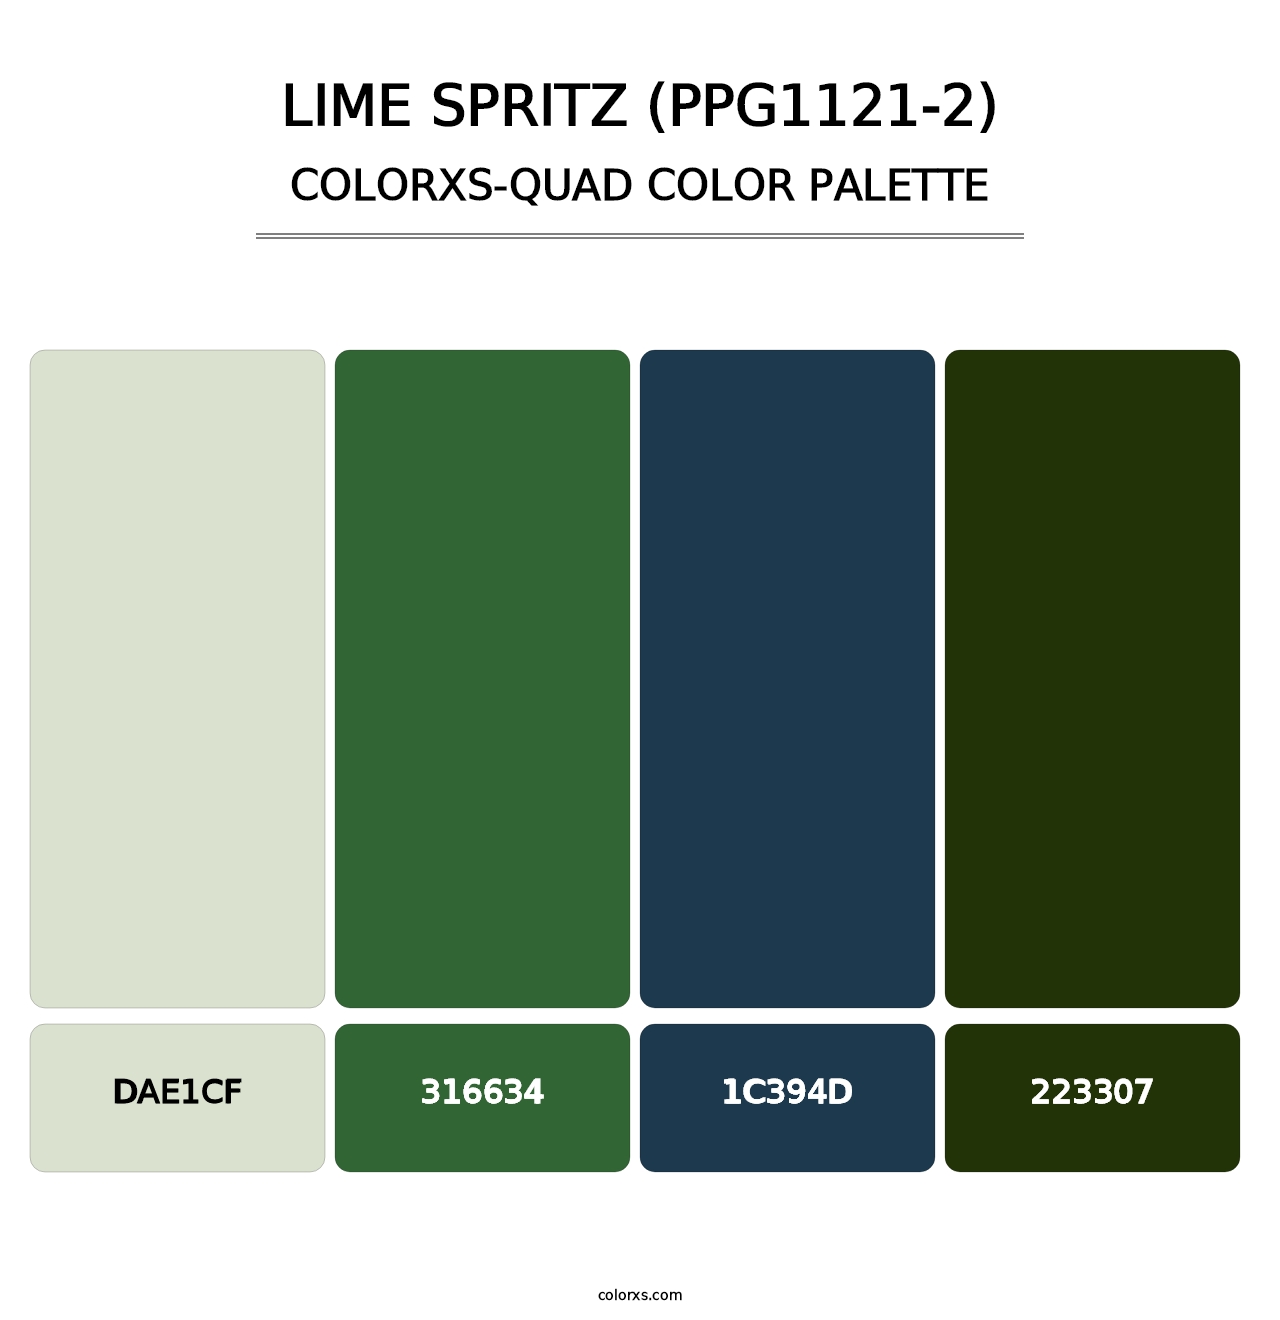 Lime Spritz (PPG1121-2) - Colorxs Quad Palette